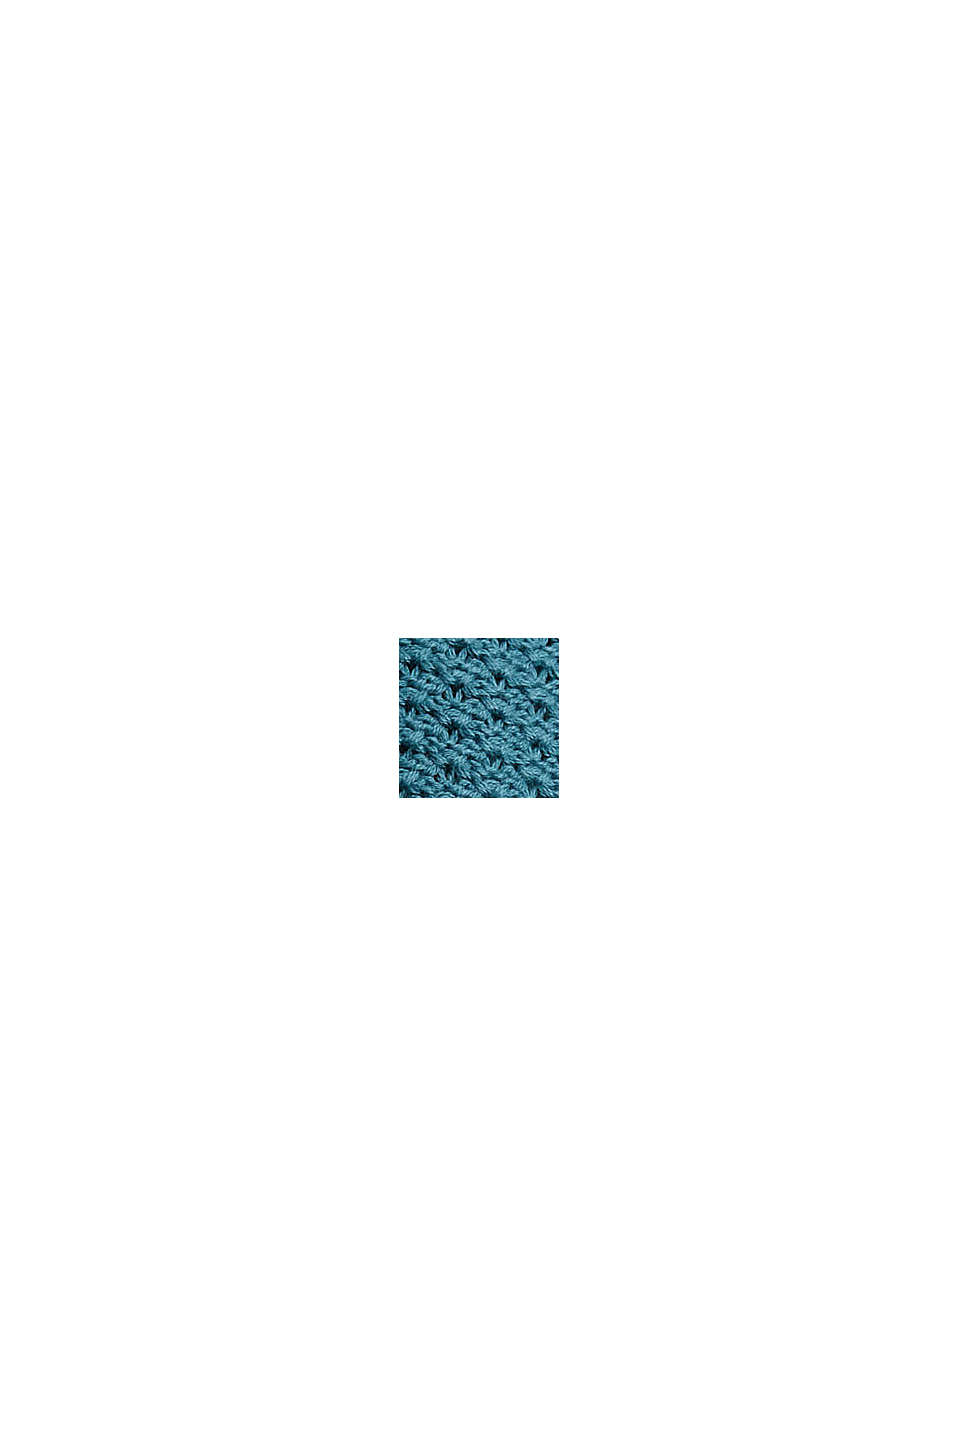 Jersey de punto texturizado con cuello alto, PETROL BLUE, swatch